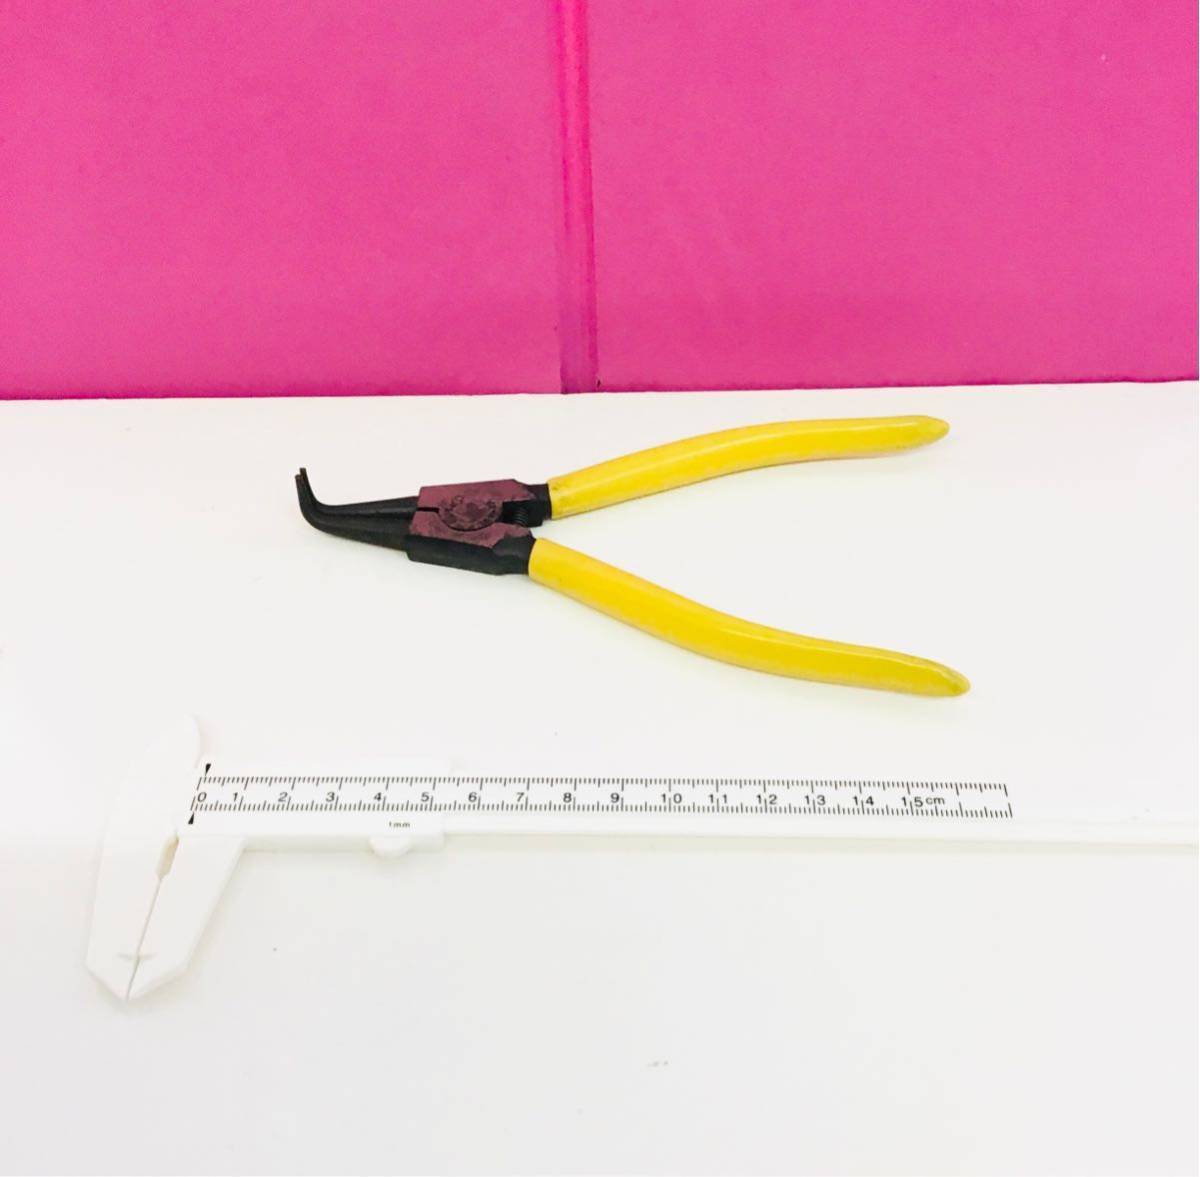 スナップリングプライヤー 63-2B 軸用 曲げ爪 ばね付き 黄こ⑩ リング使用範囲:25～50mm 全長:175mm 爪先端径:1.2mm 高品質 訳有の画像5